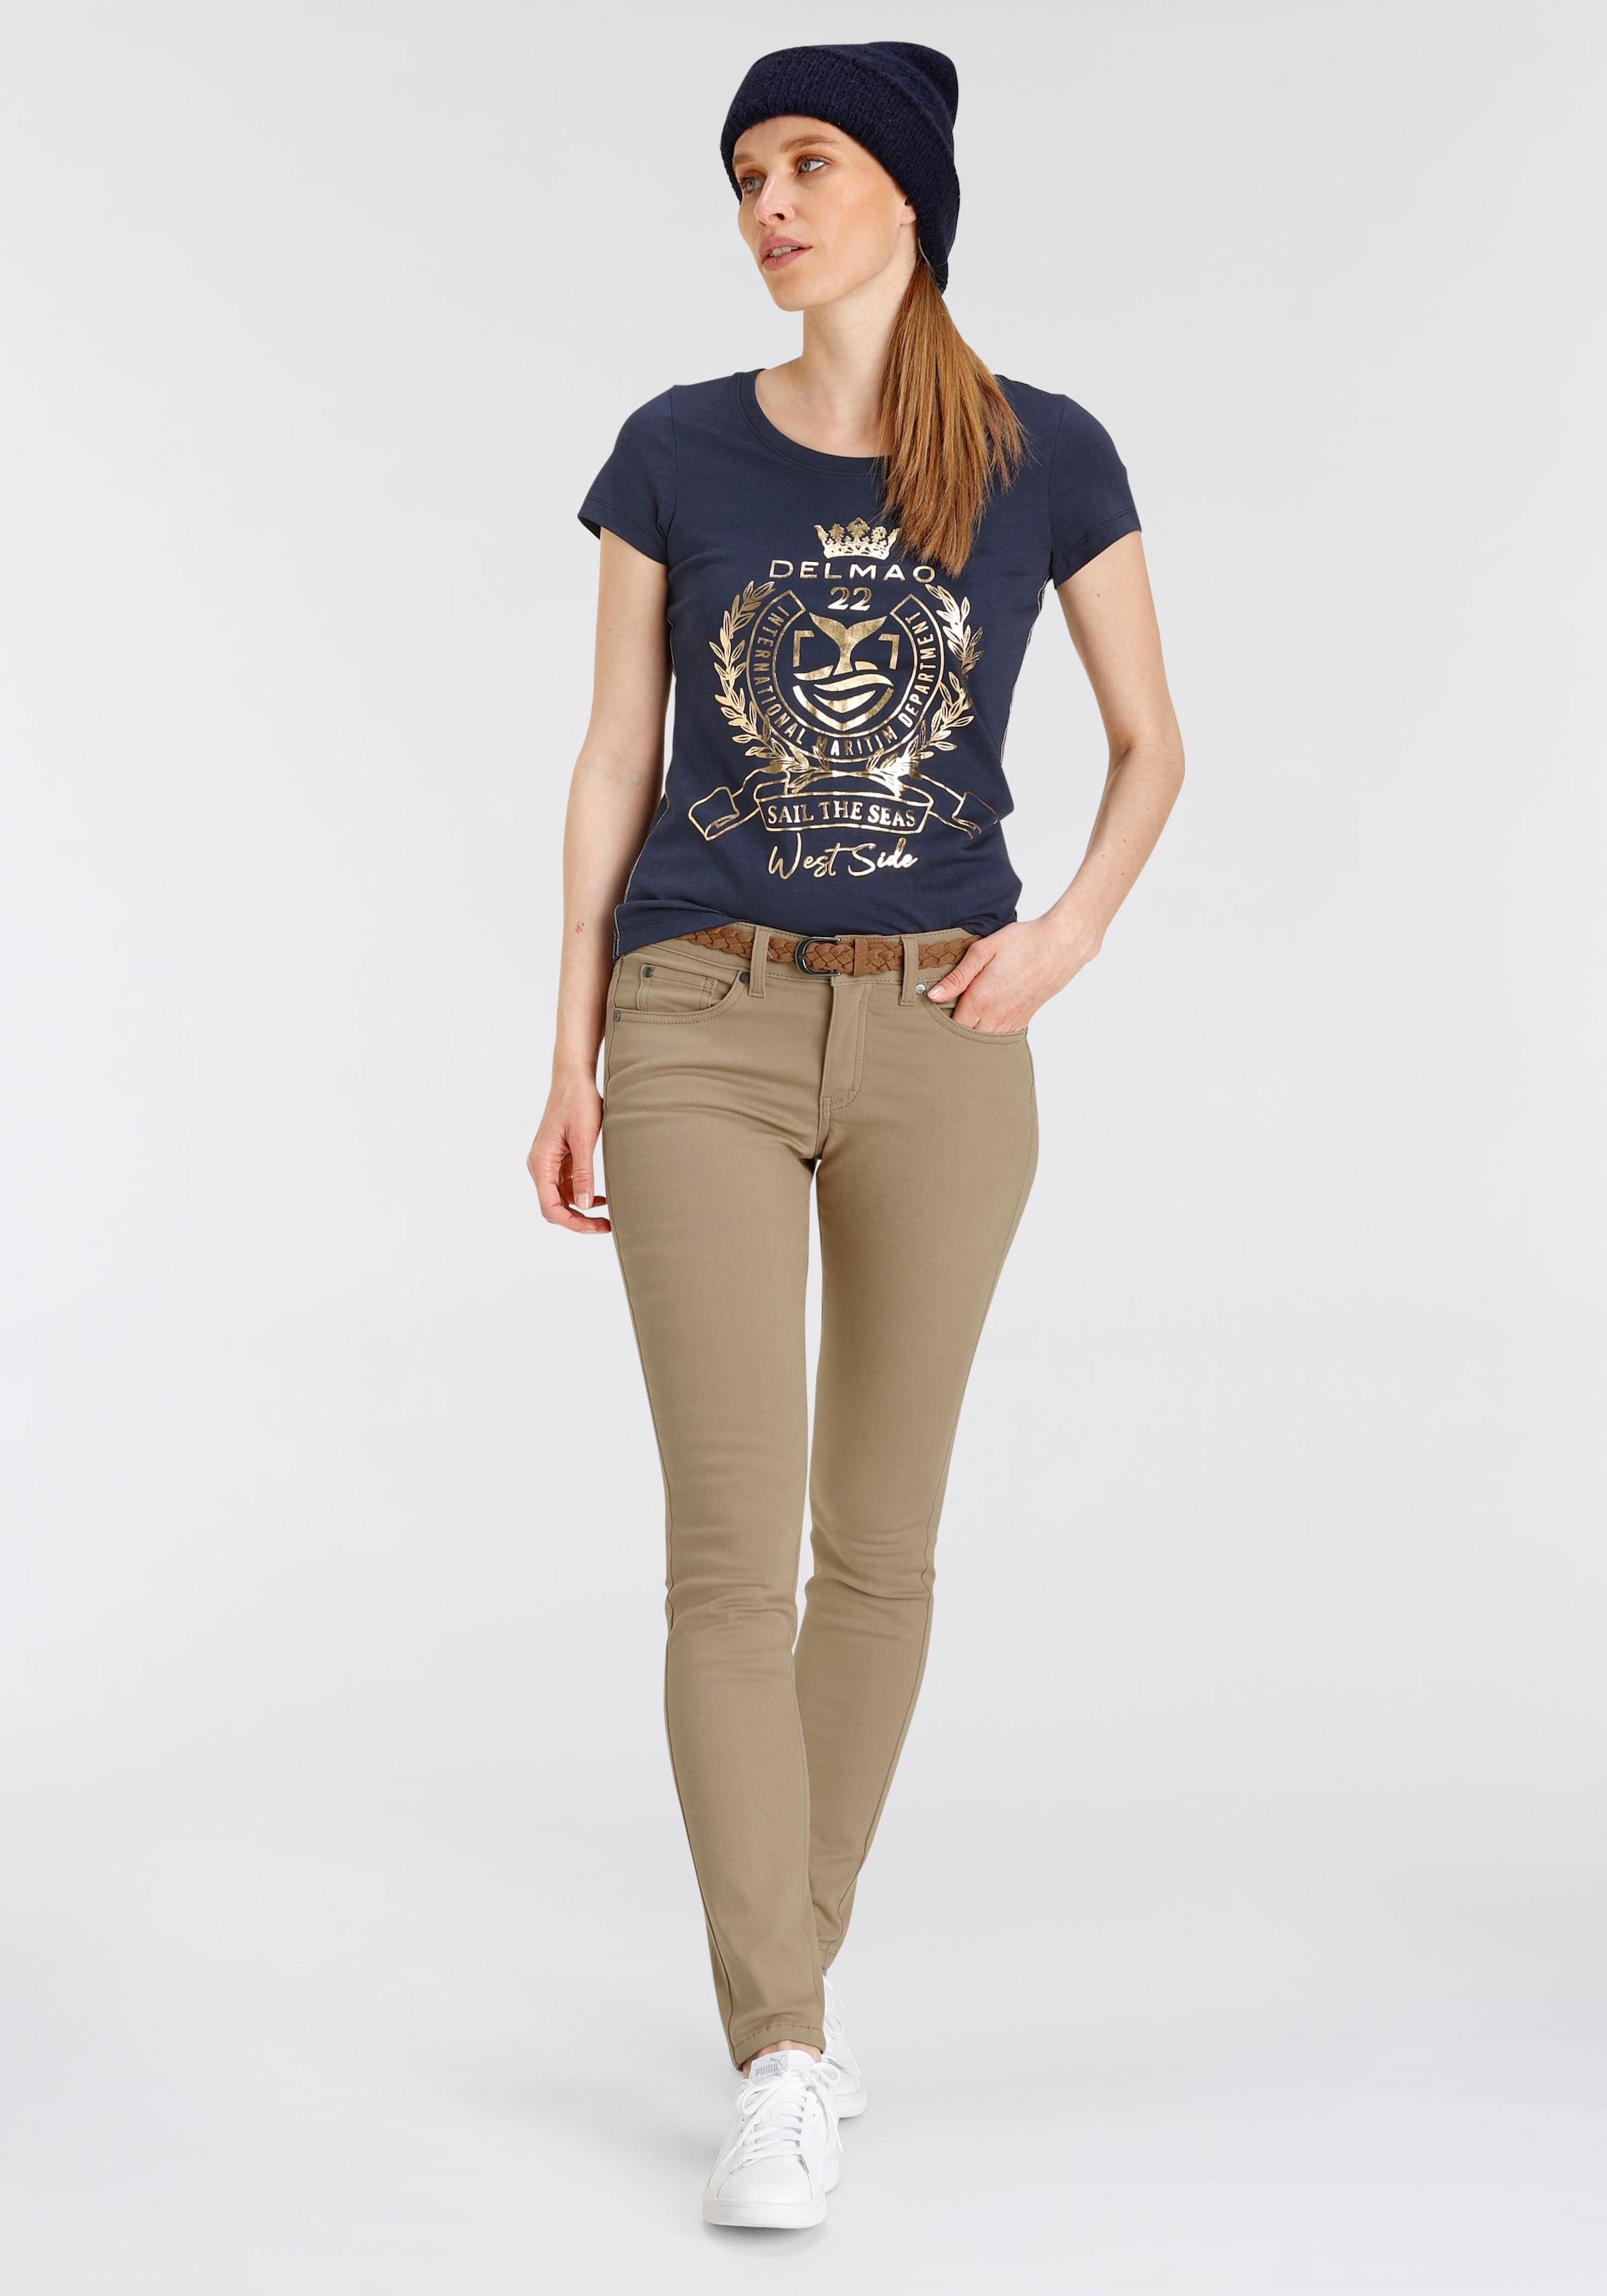 ♕ DELMAO - mit hochwertigem, T-Shirt, NEUE versandkostenfrei auf goldfarbenem Folienprint MARKE